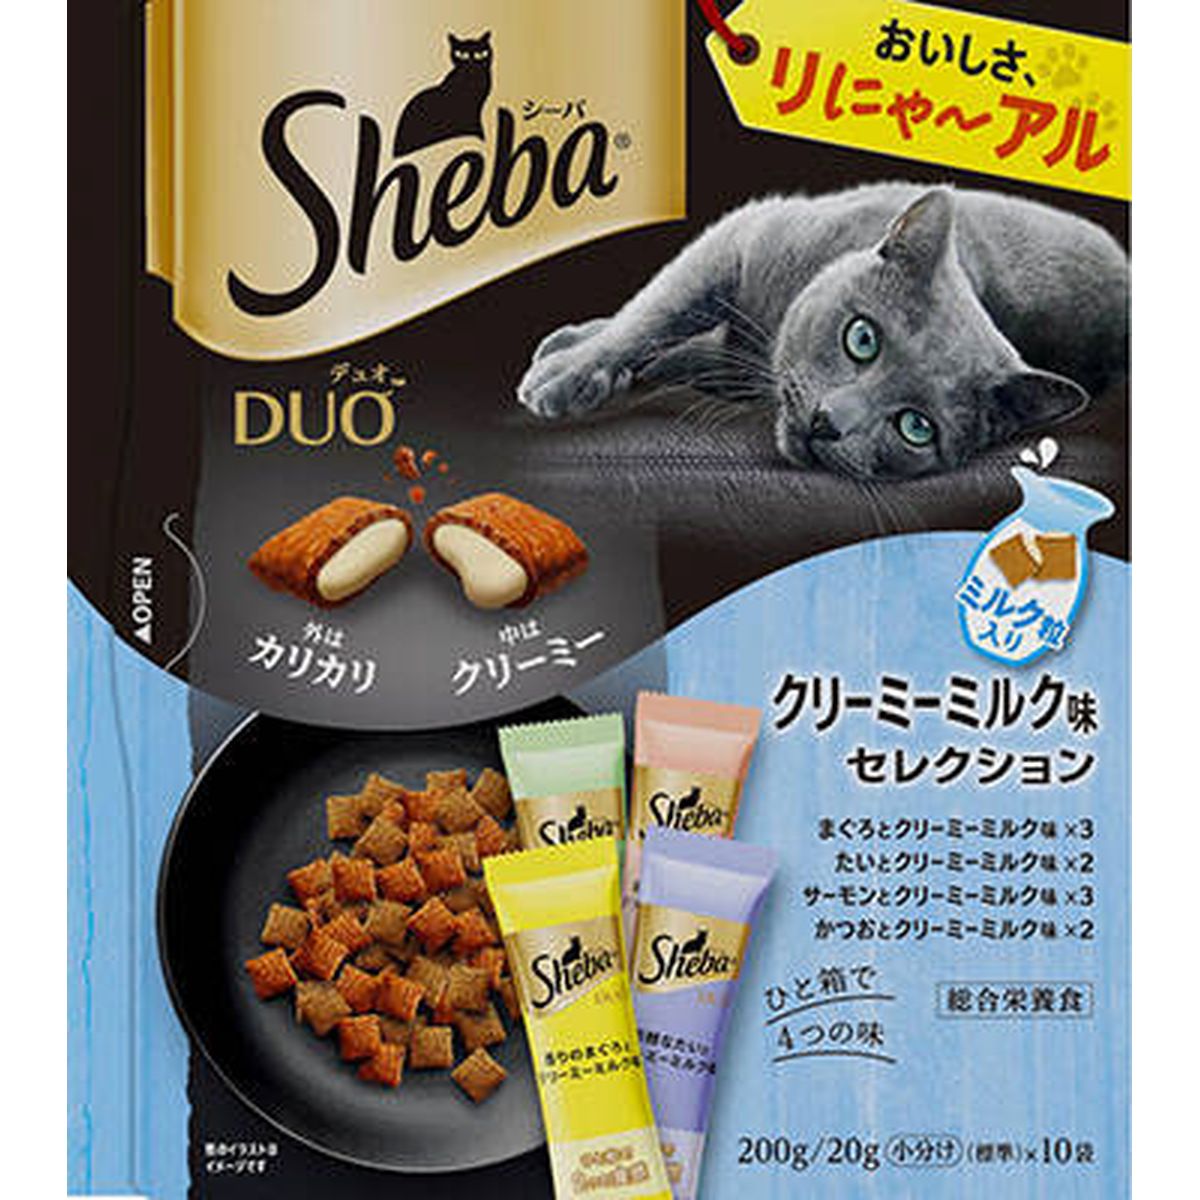 シーバ デュオ クリーミーミルク味セレクション200g×12袋